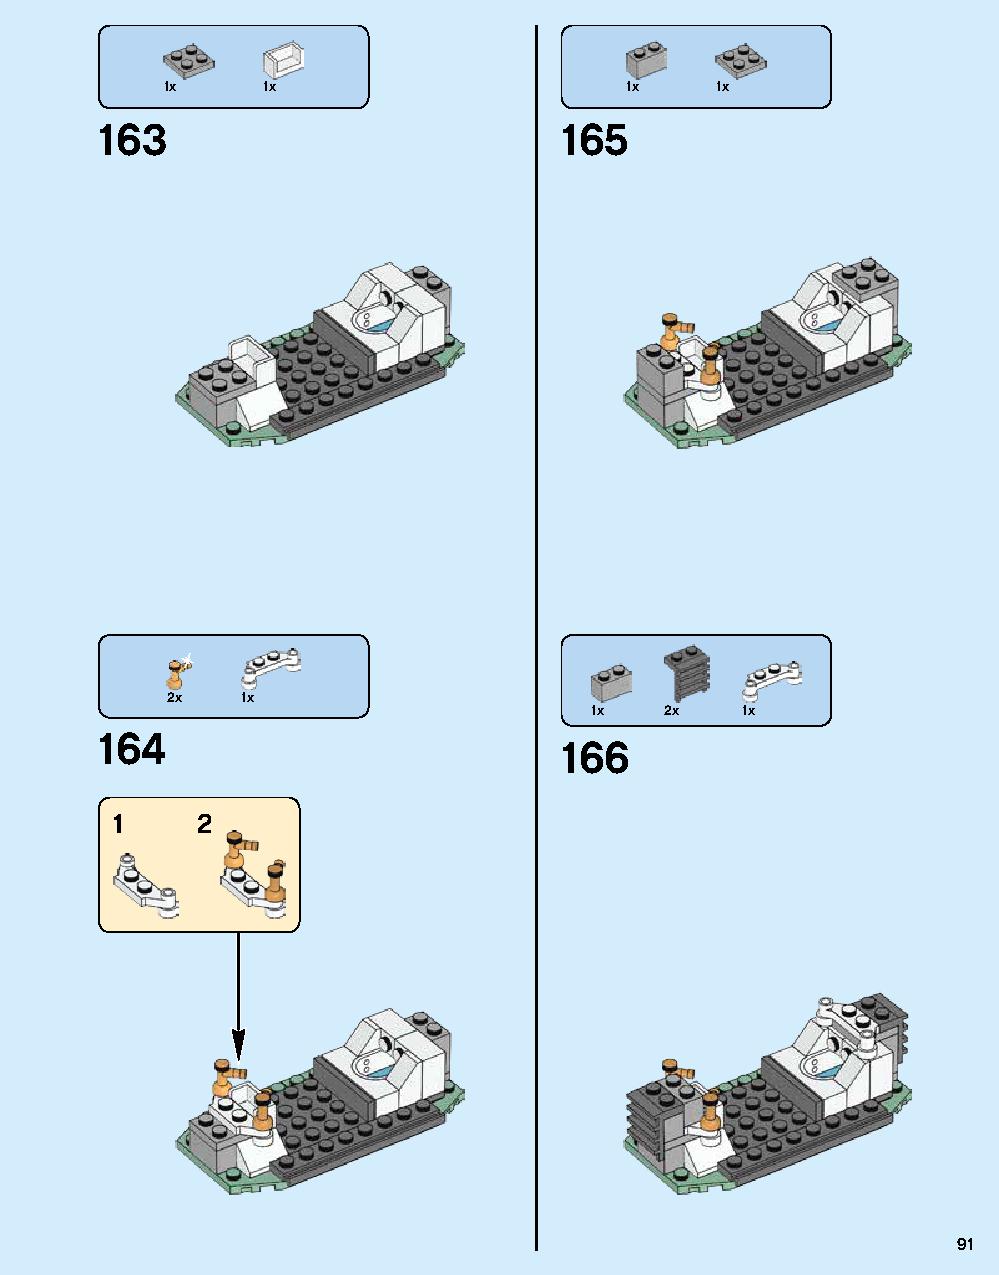 ニンジャゴー シティ 70620 レゴの商品情報 レゴの説明書・組立方法 91 page